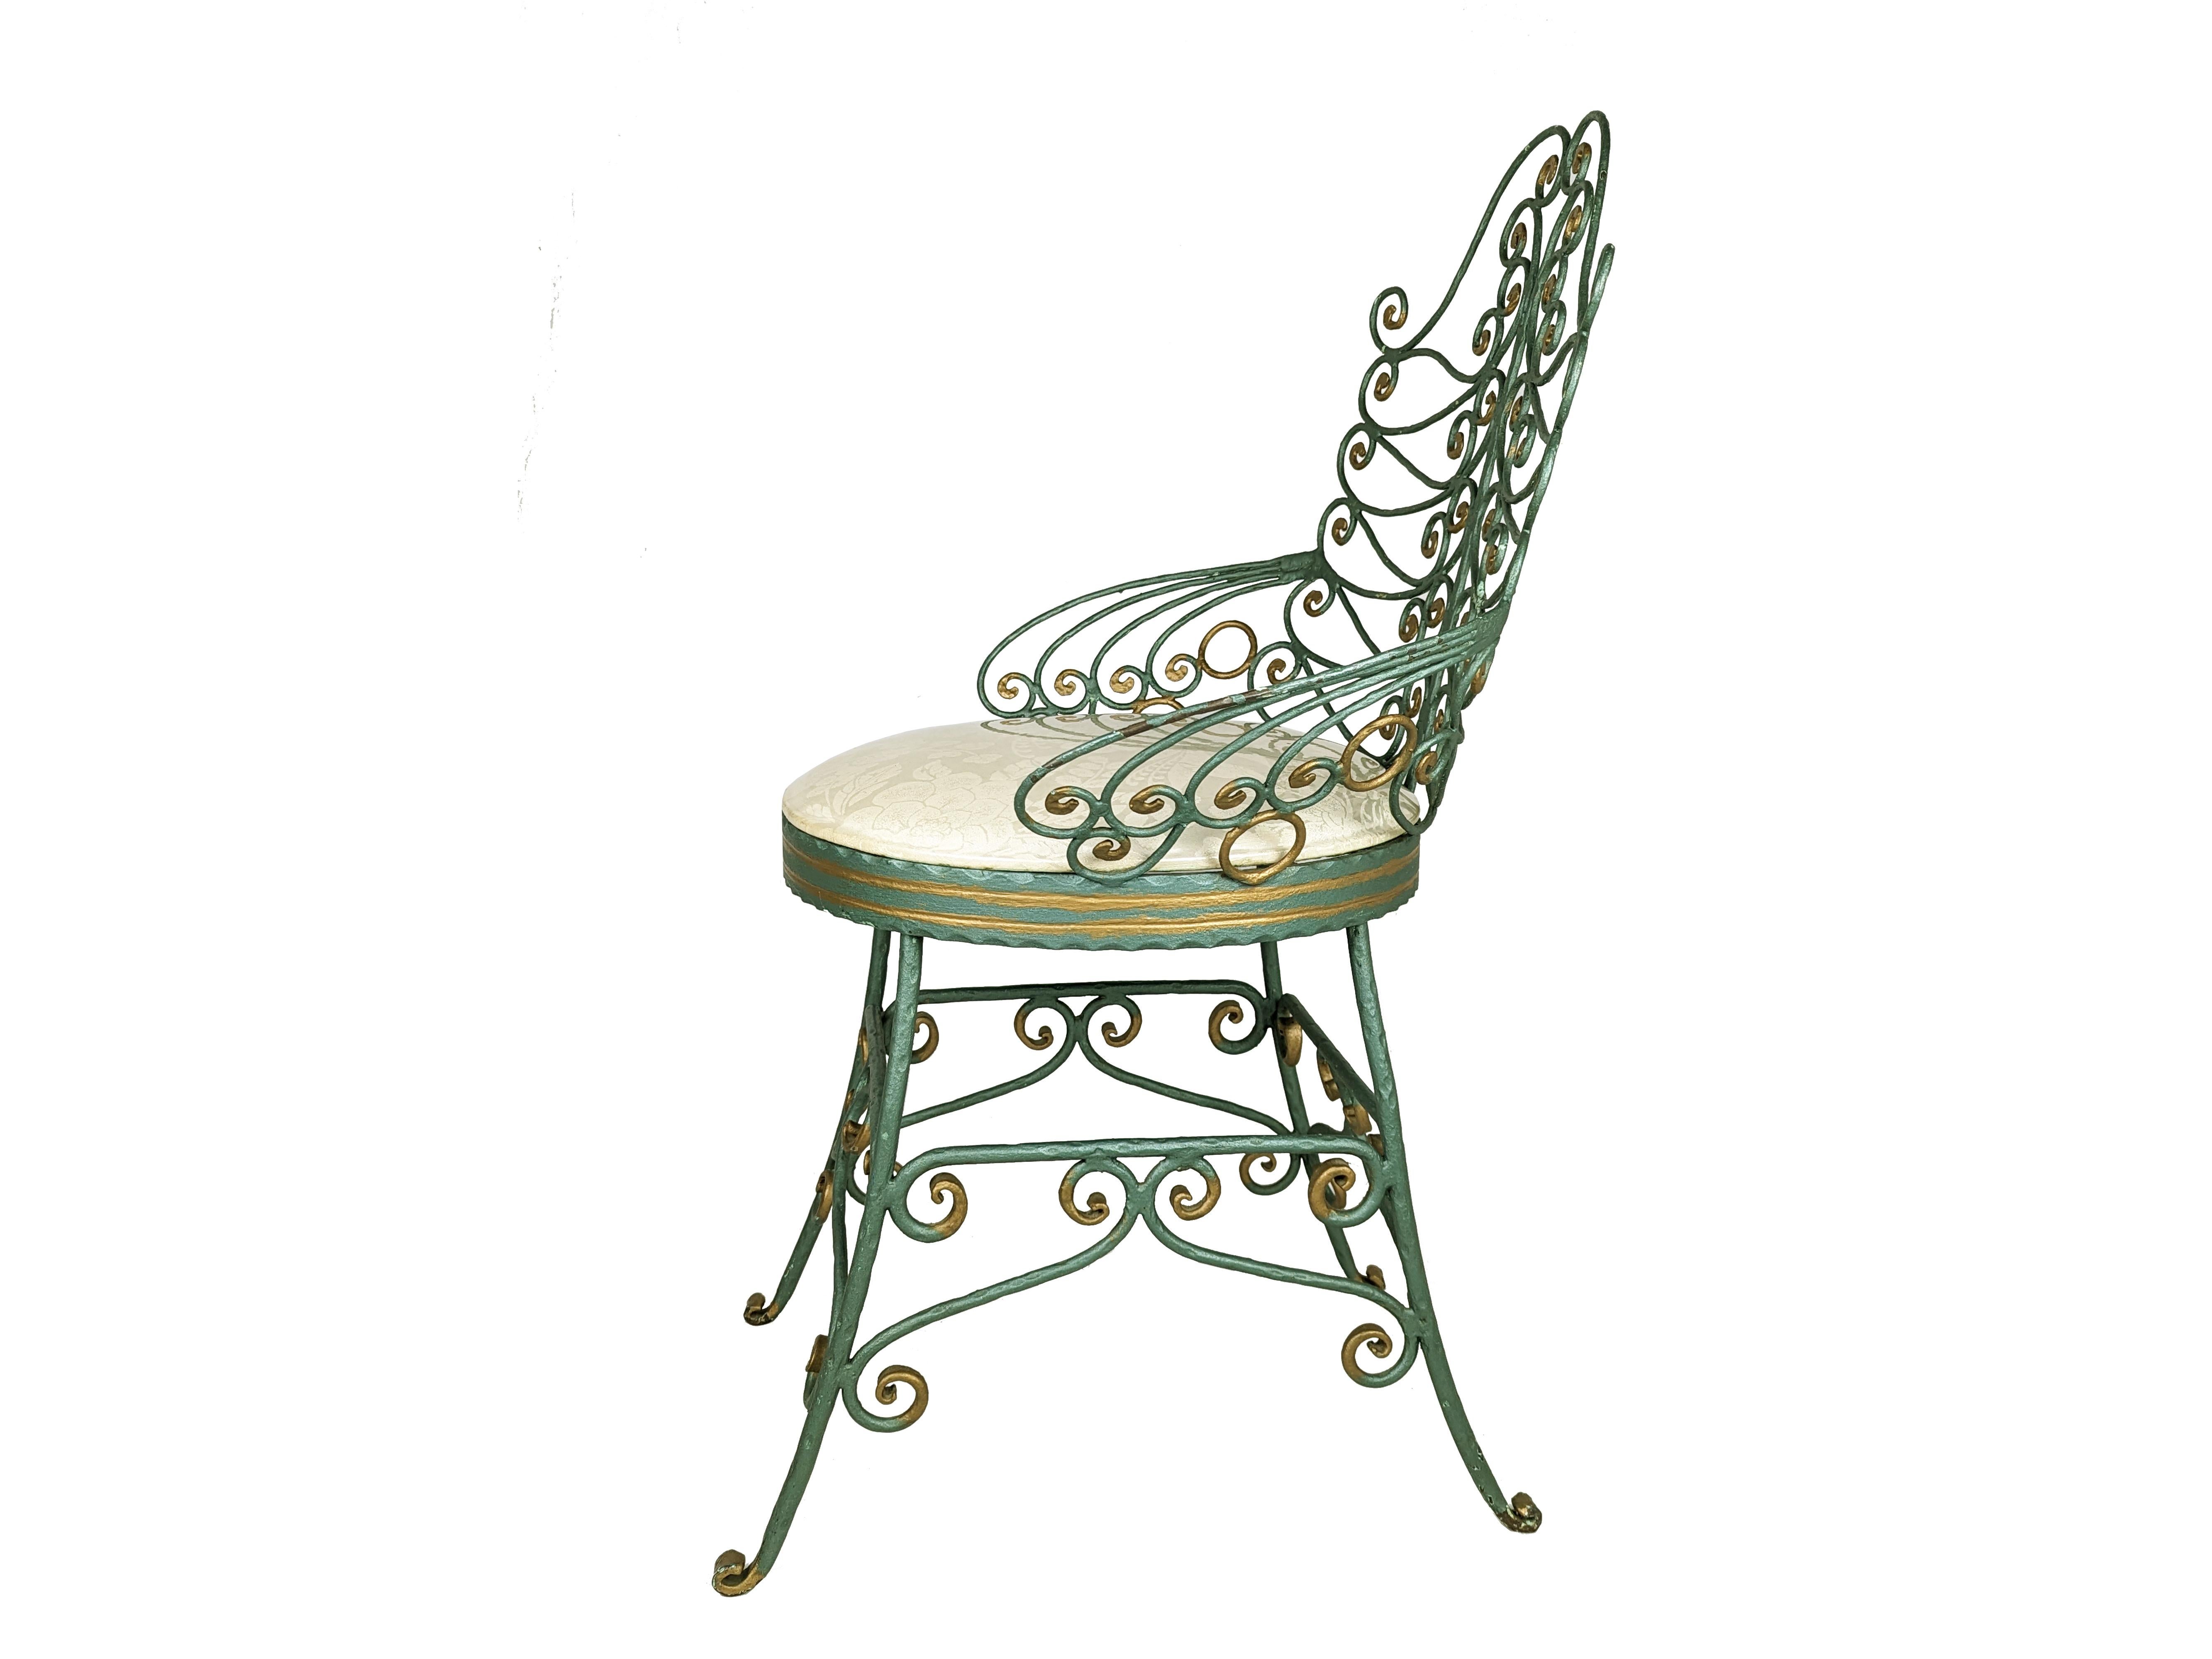 Rare et agréable chaise en fer forgé vraisemblablement du milieu du 20ème siècle. Réalisée dans le style des chaises paon avec un dessin complexe de volutes denses. La chaise est de couleur verte avec des détails décoratifs dorés. L'assise,